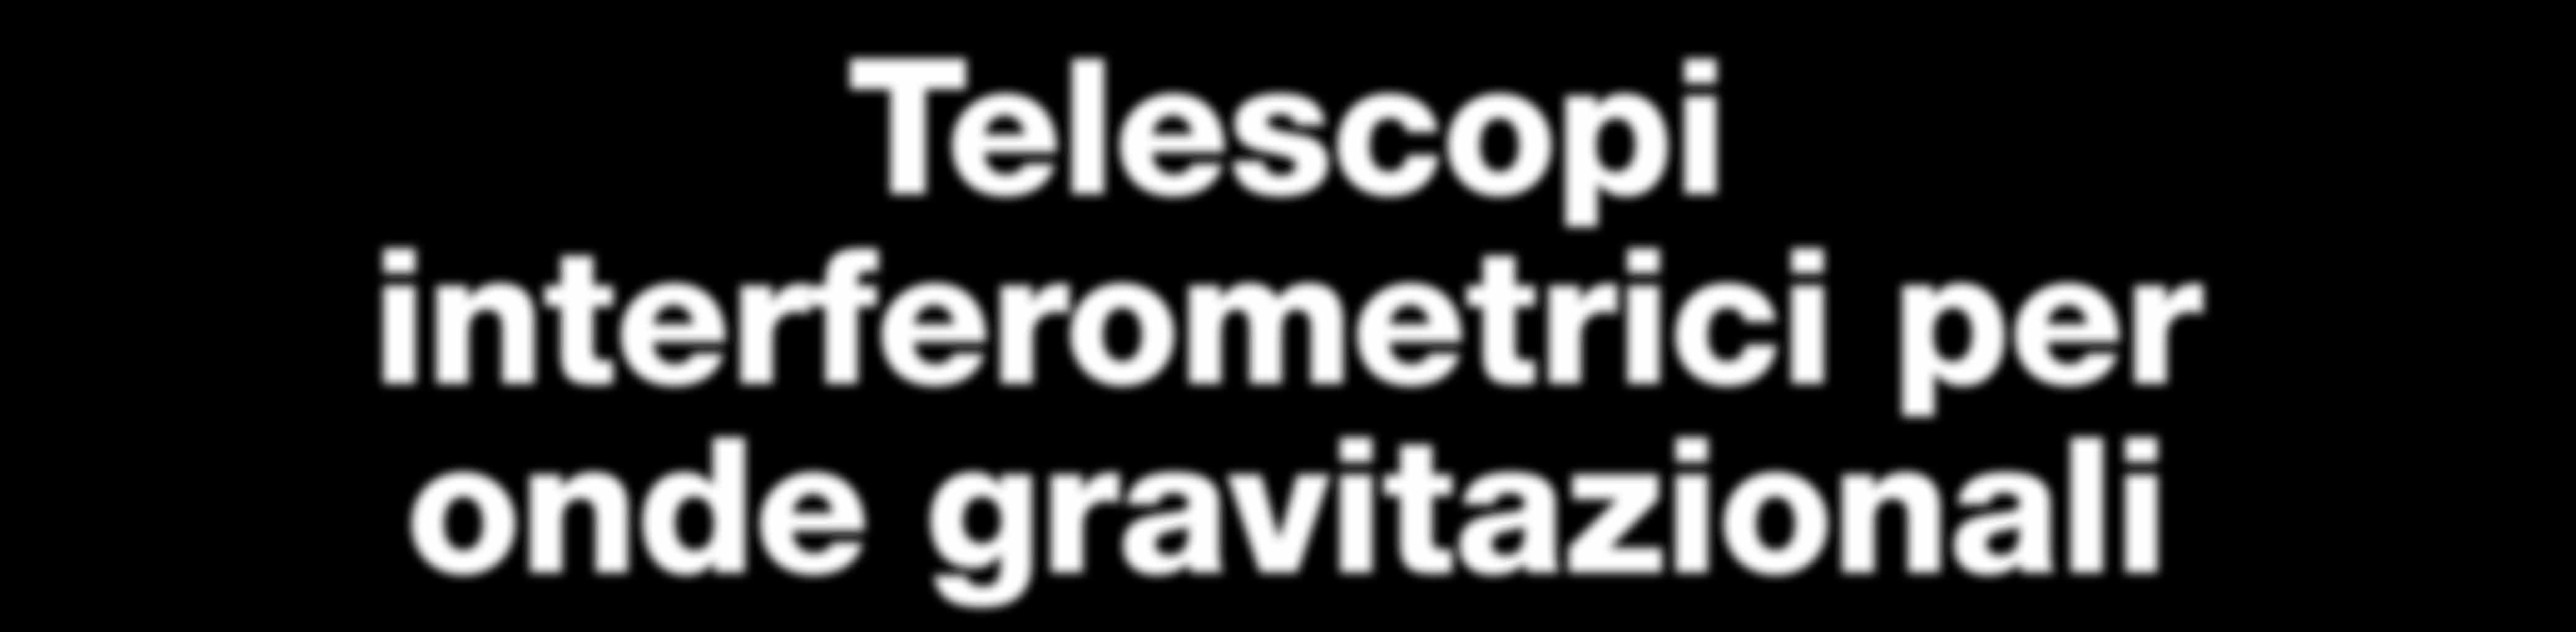 Telescopi interferometrici per onde gravitazionali Le onde gravitazionali distorcono lo spazio-tempo: al passaggio di un onda, la distanza fra due punti prefissati aumenta o diminuisce.